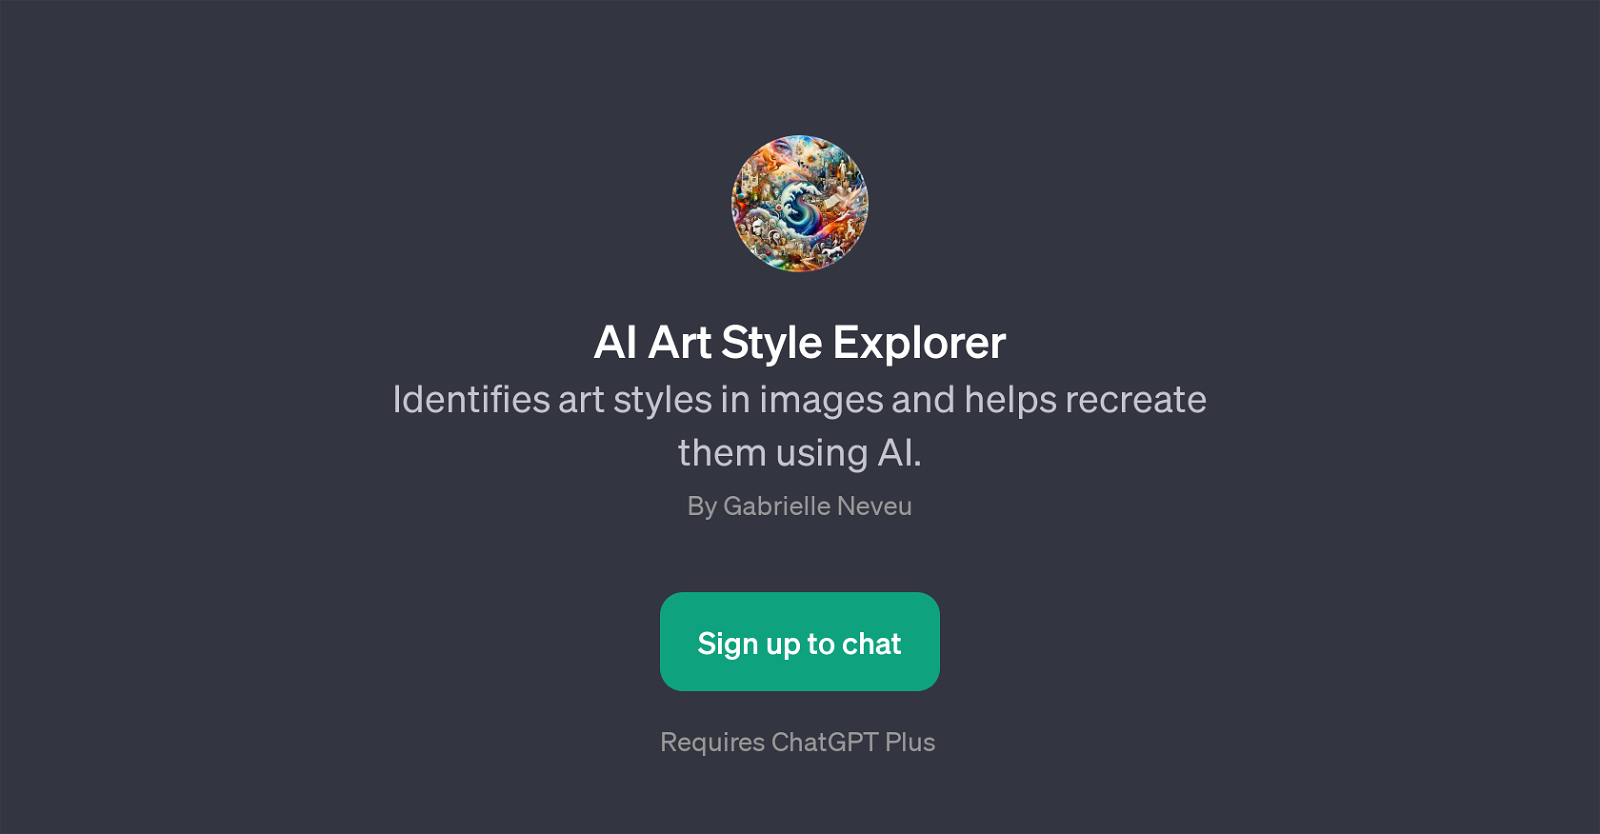 AI Art Style Explorer - Art style analysis - TAAFT